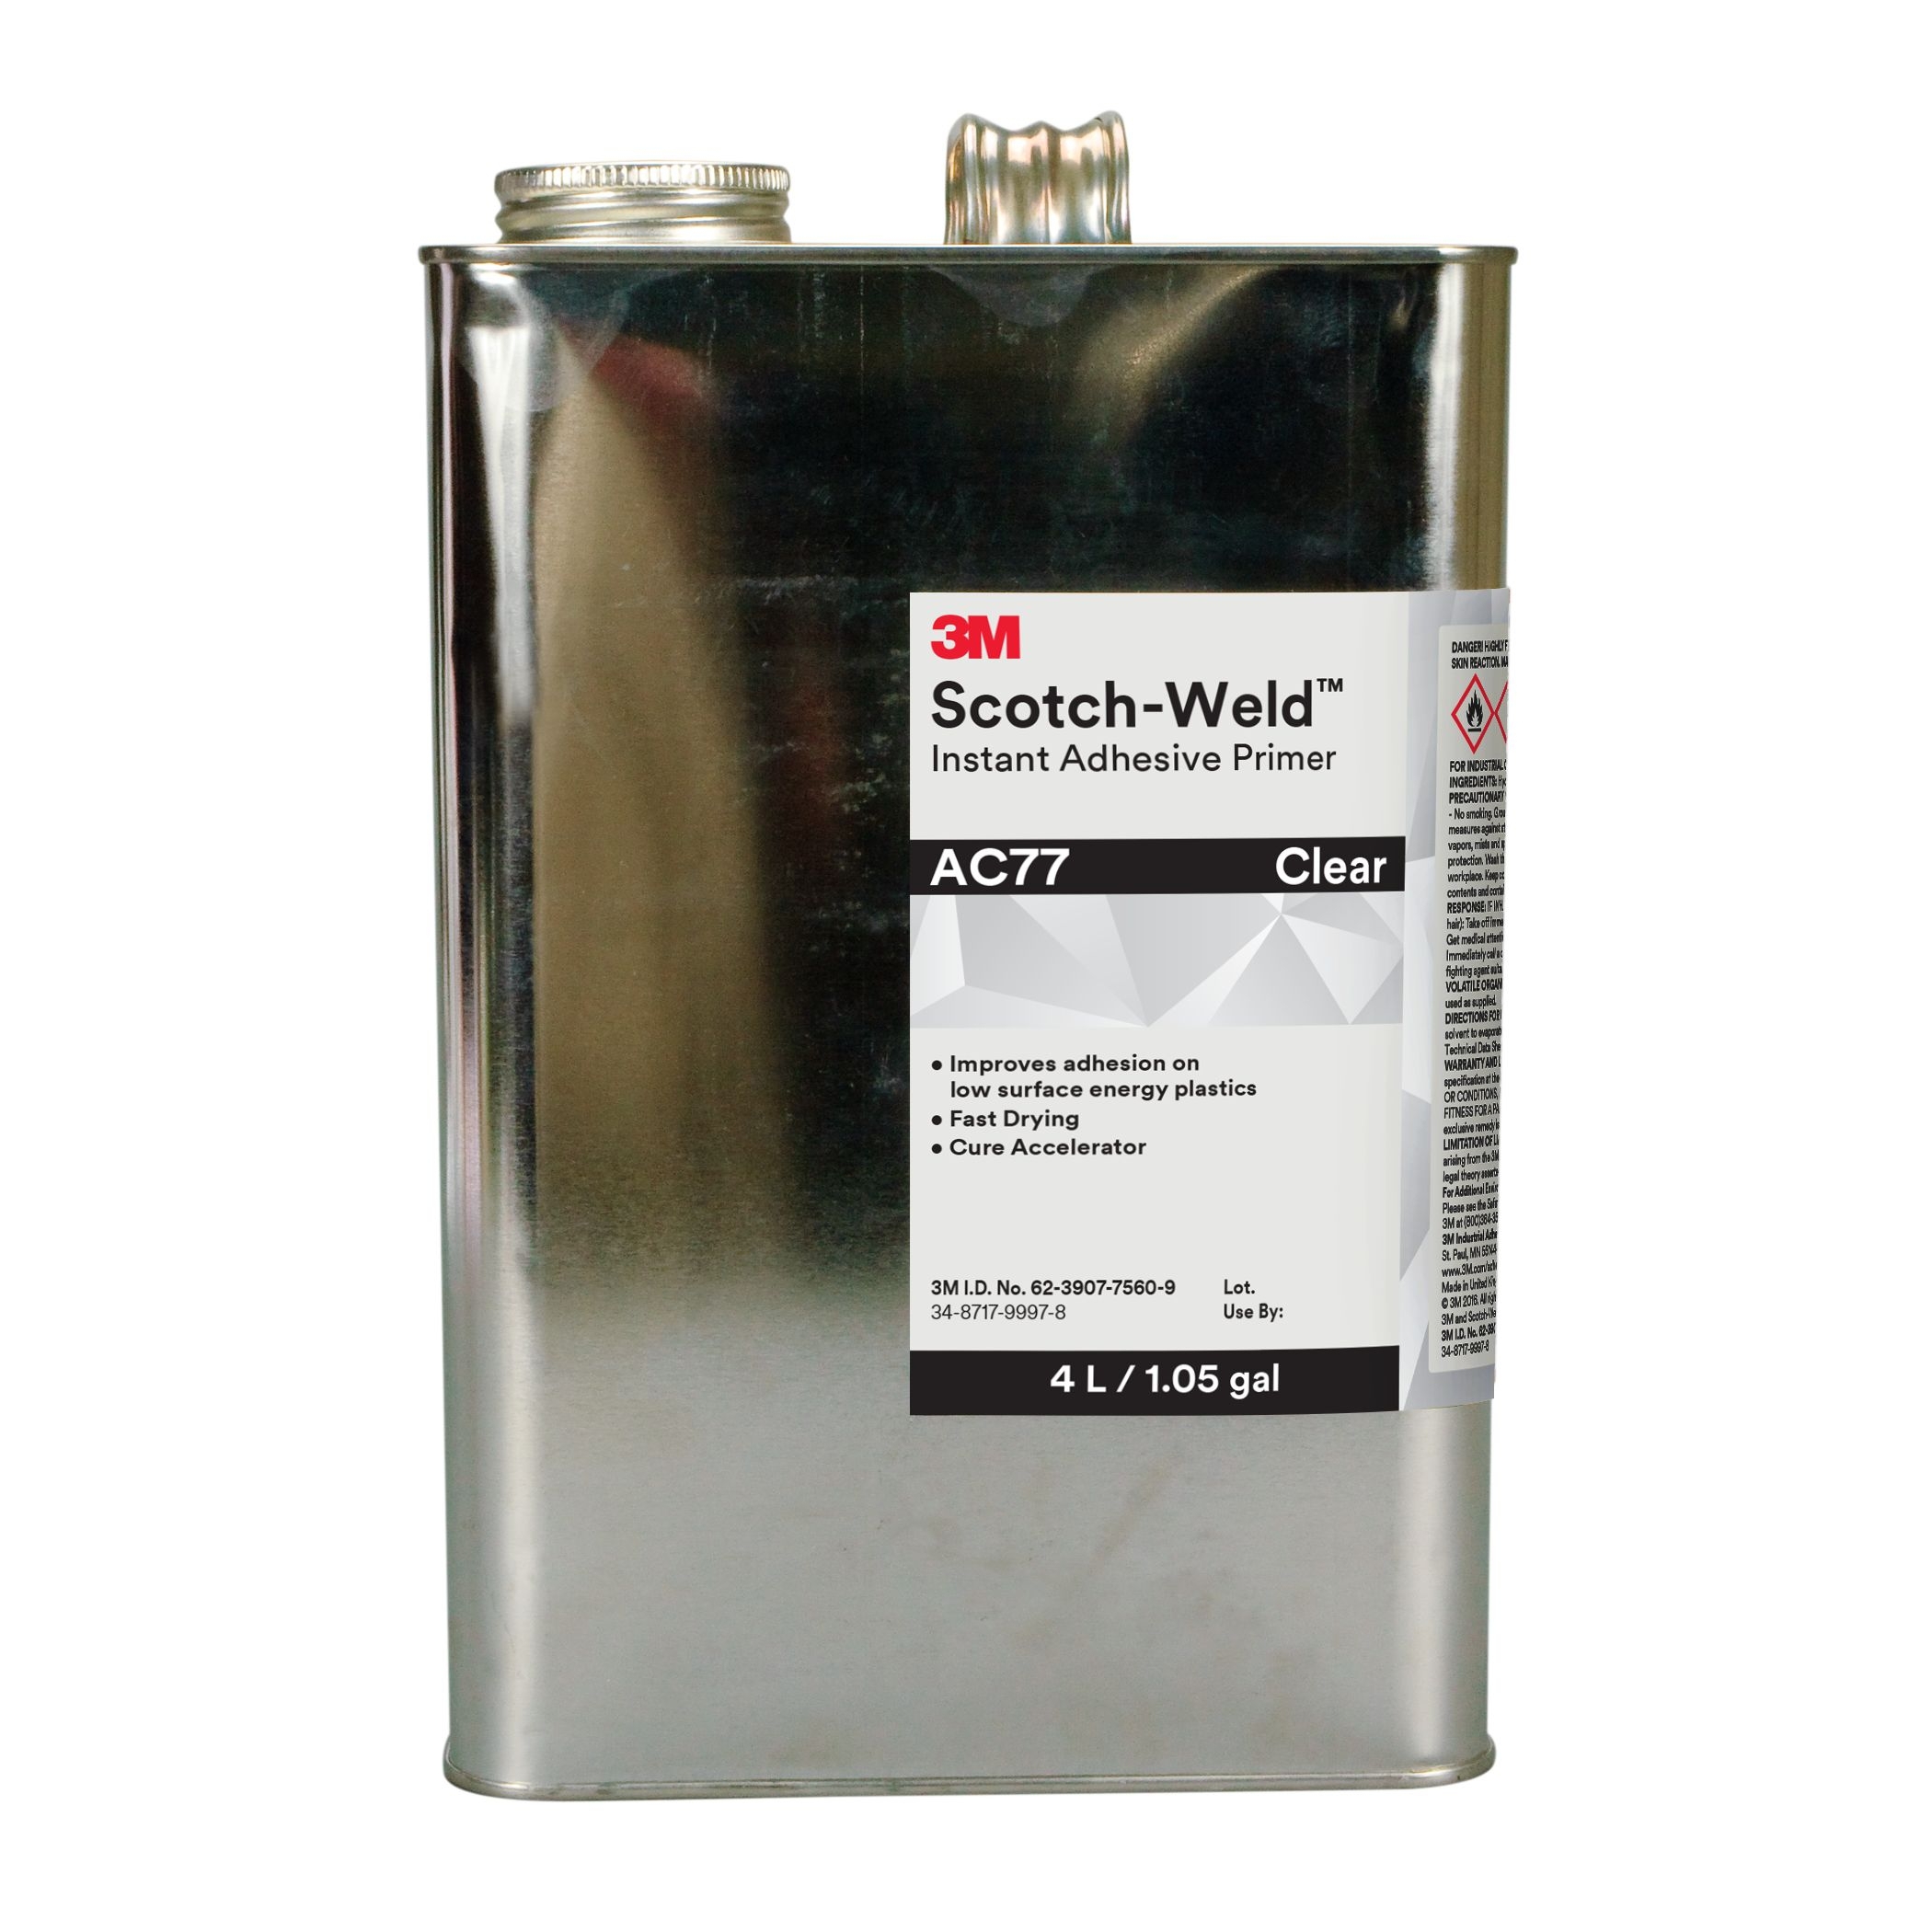 3M Scotch-Weld Primaire pour colles cyanoacrylates à base d'heptane AC 77, transparent, 1 l